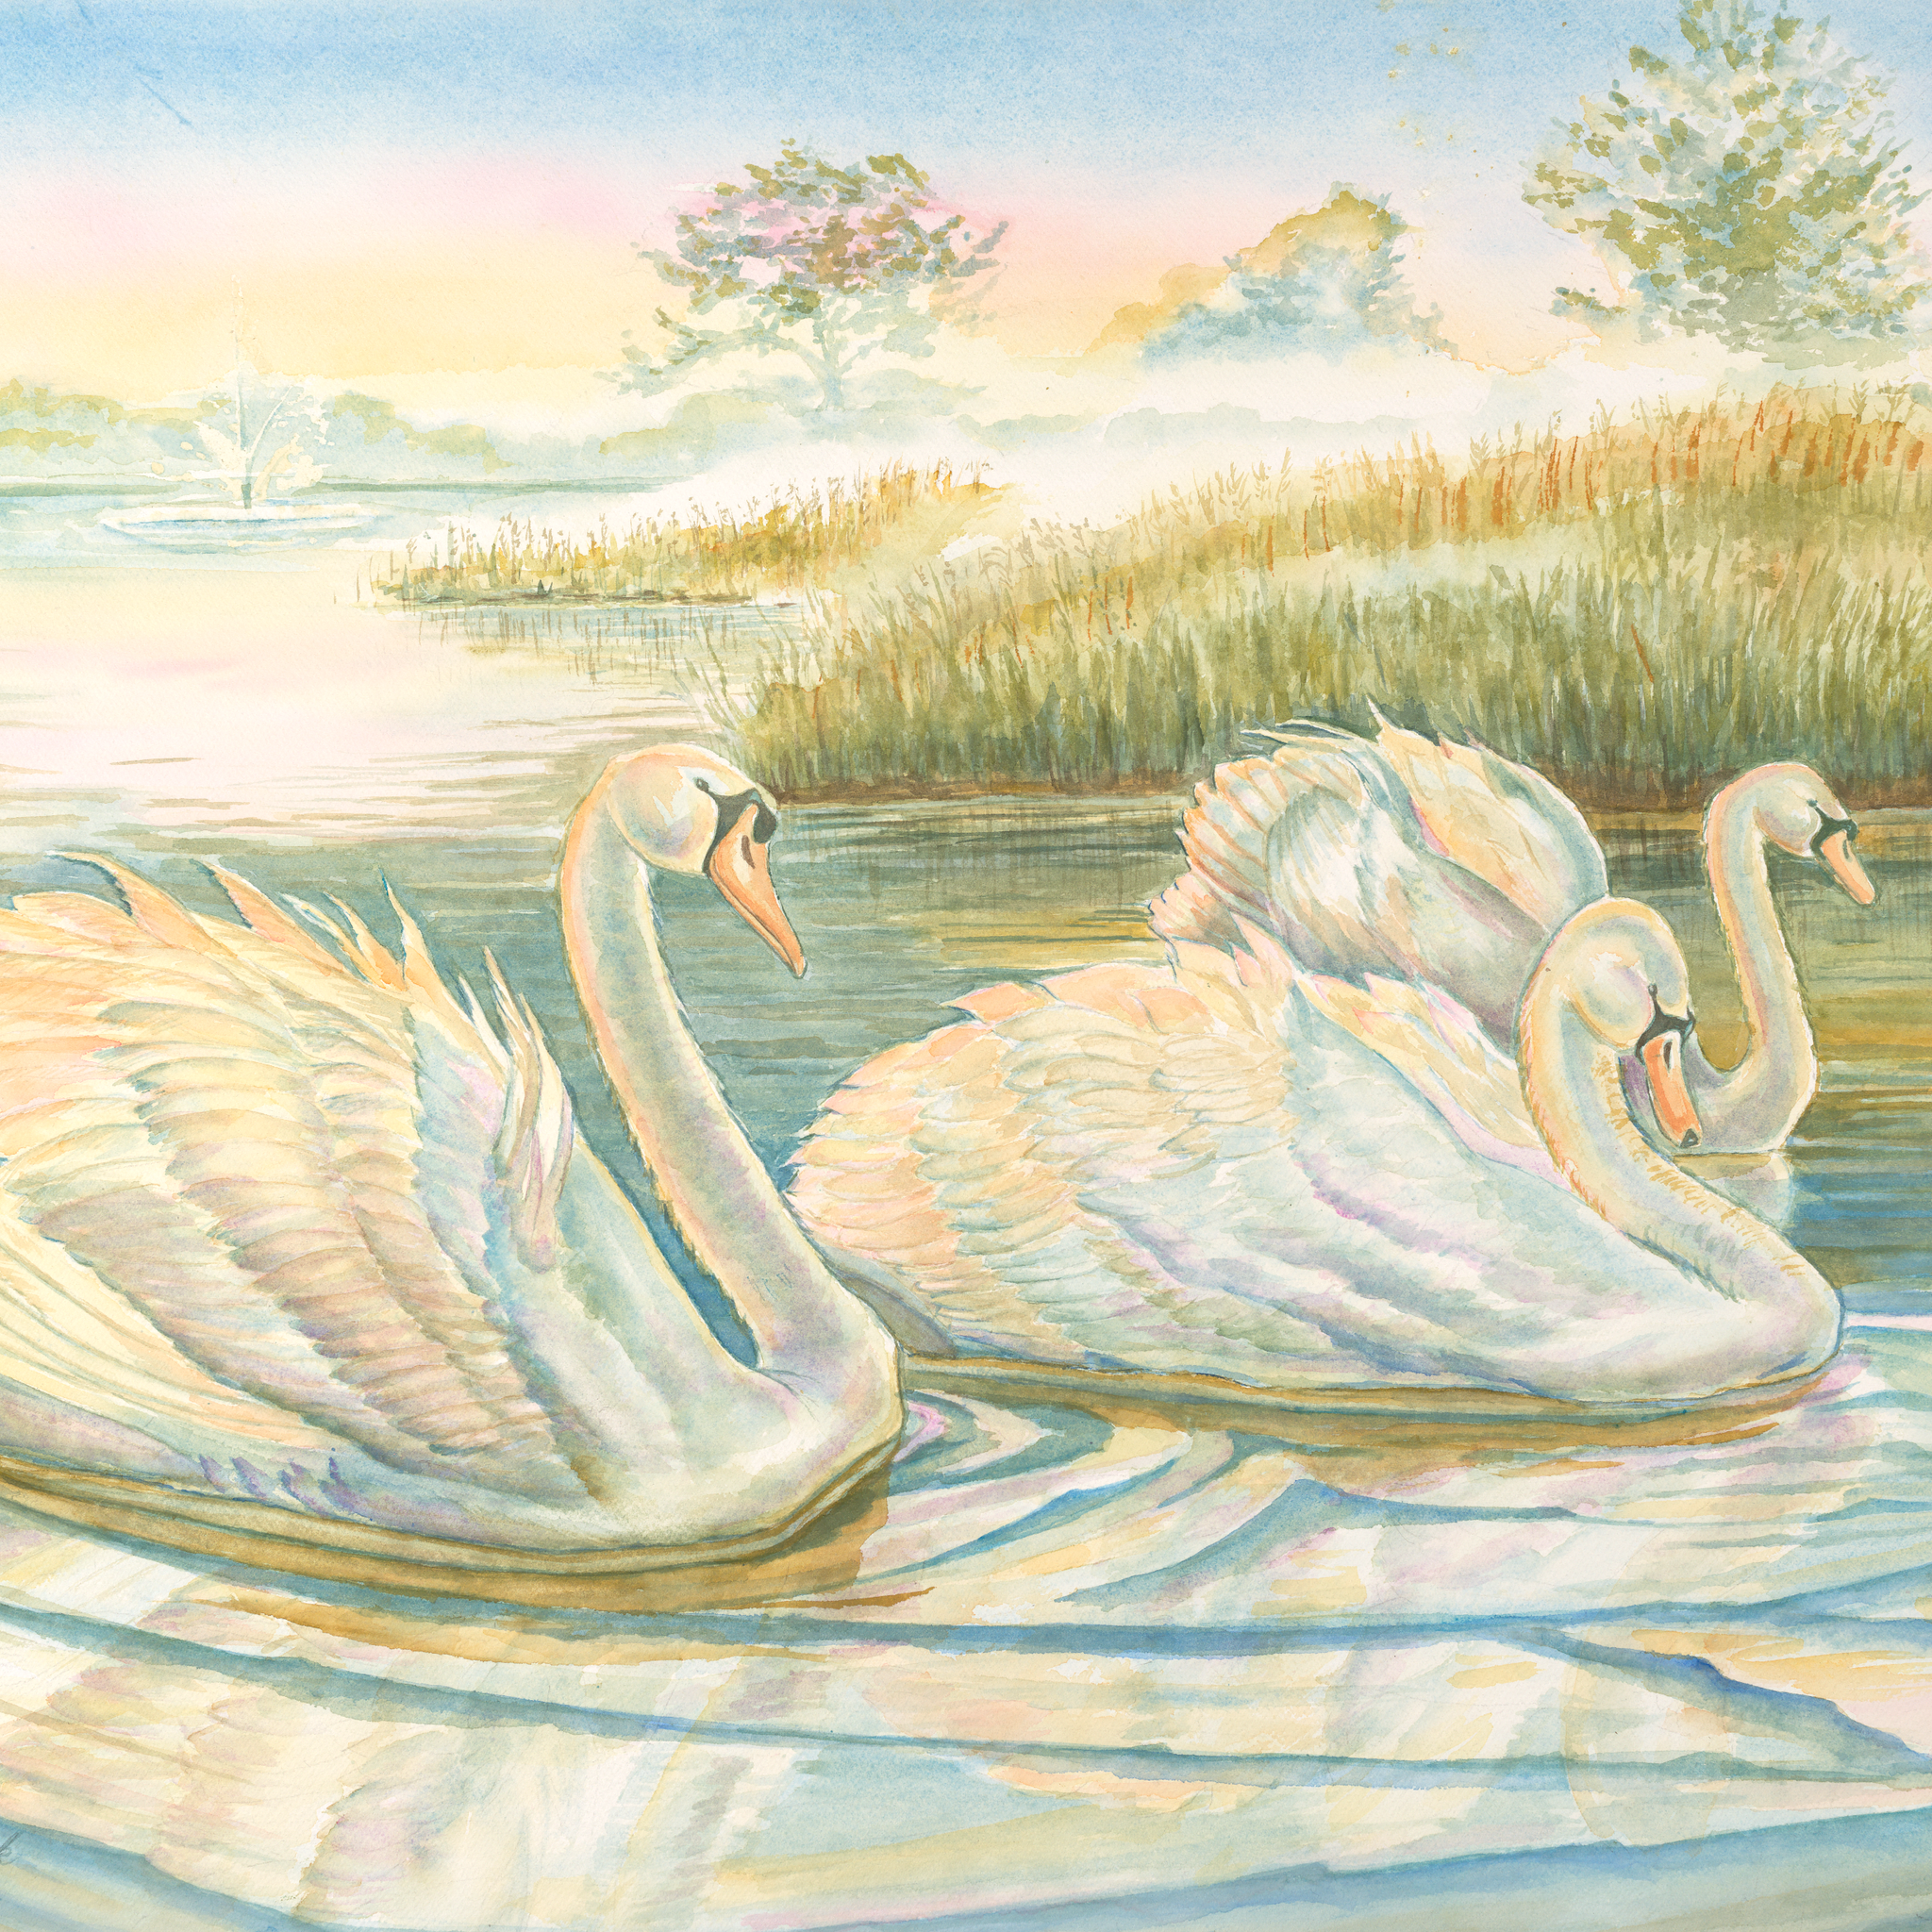 Swan Lake, Cincinnati Zoo and Botanical Garden, Watercolor Print